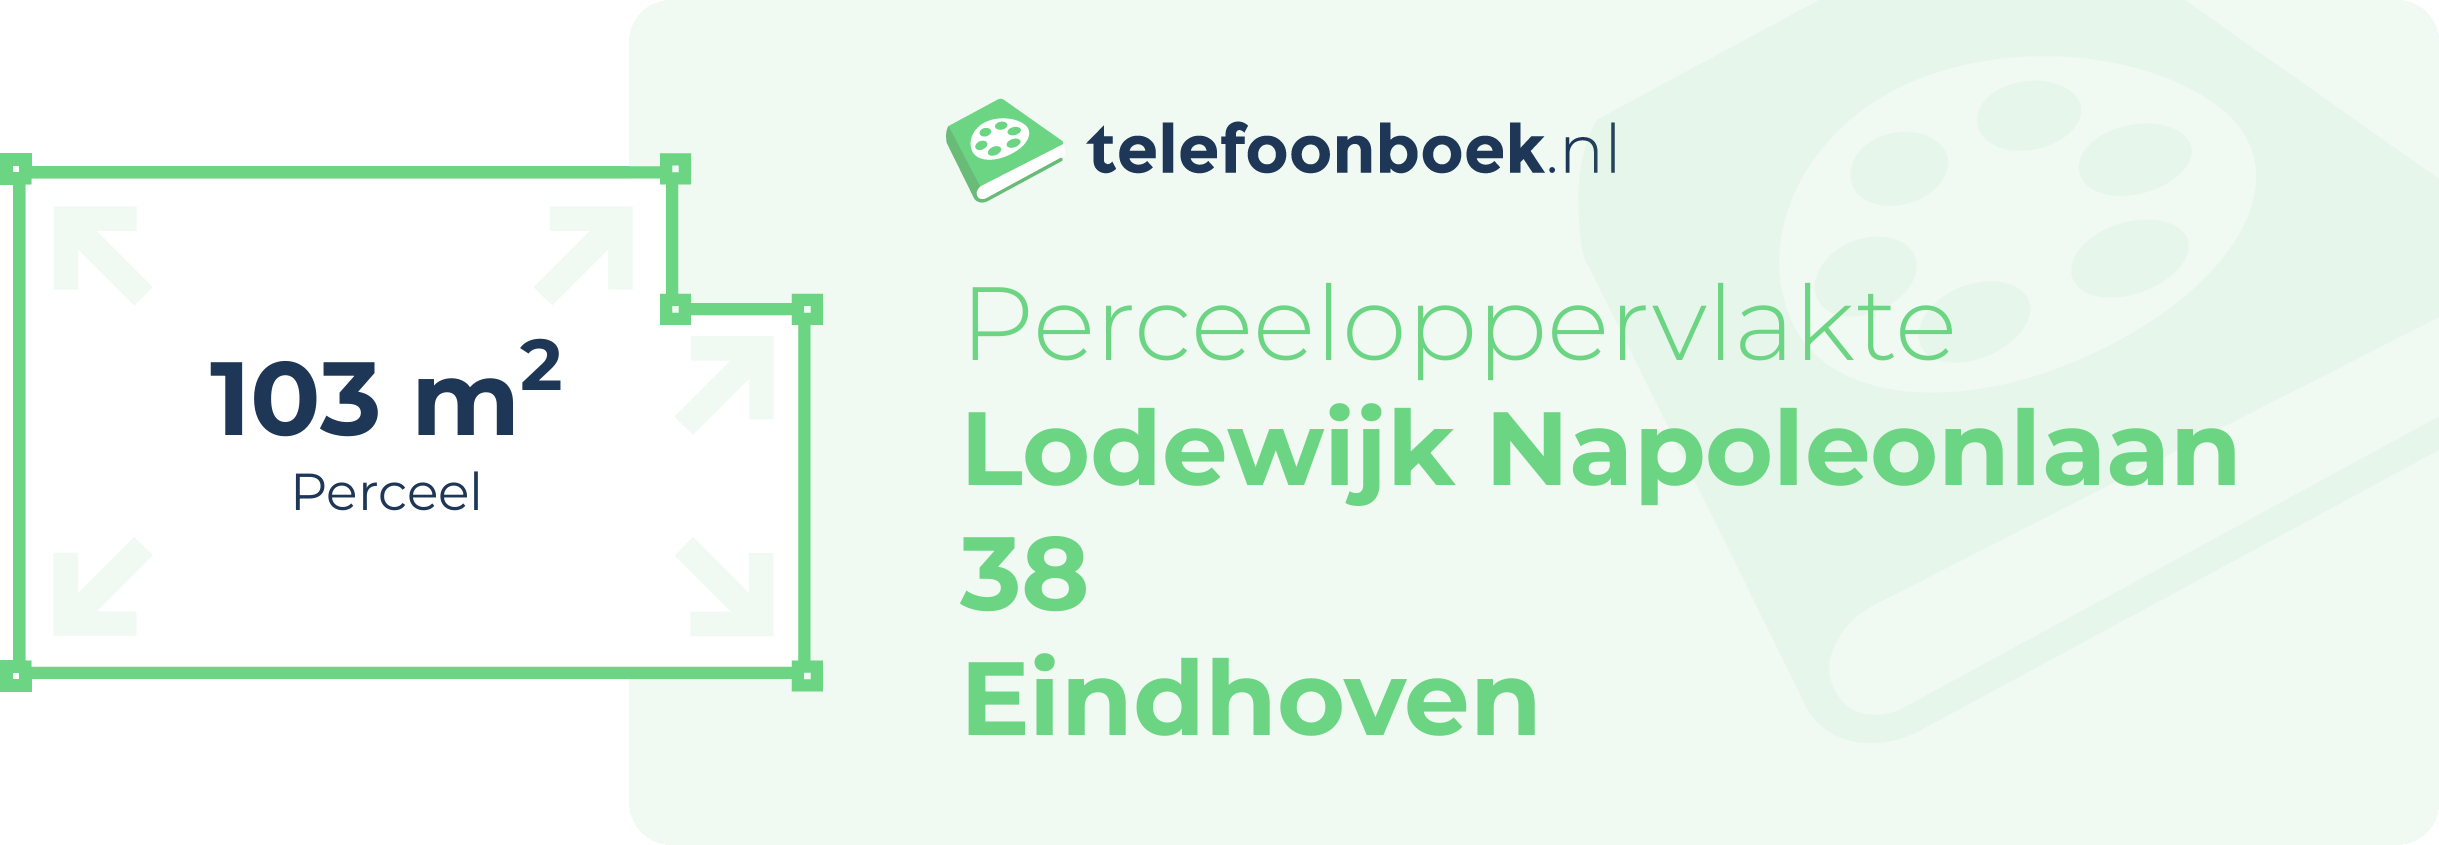 Perceeloppervlakte Lodewijk Napoleonlaan 38 Eindhoven